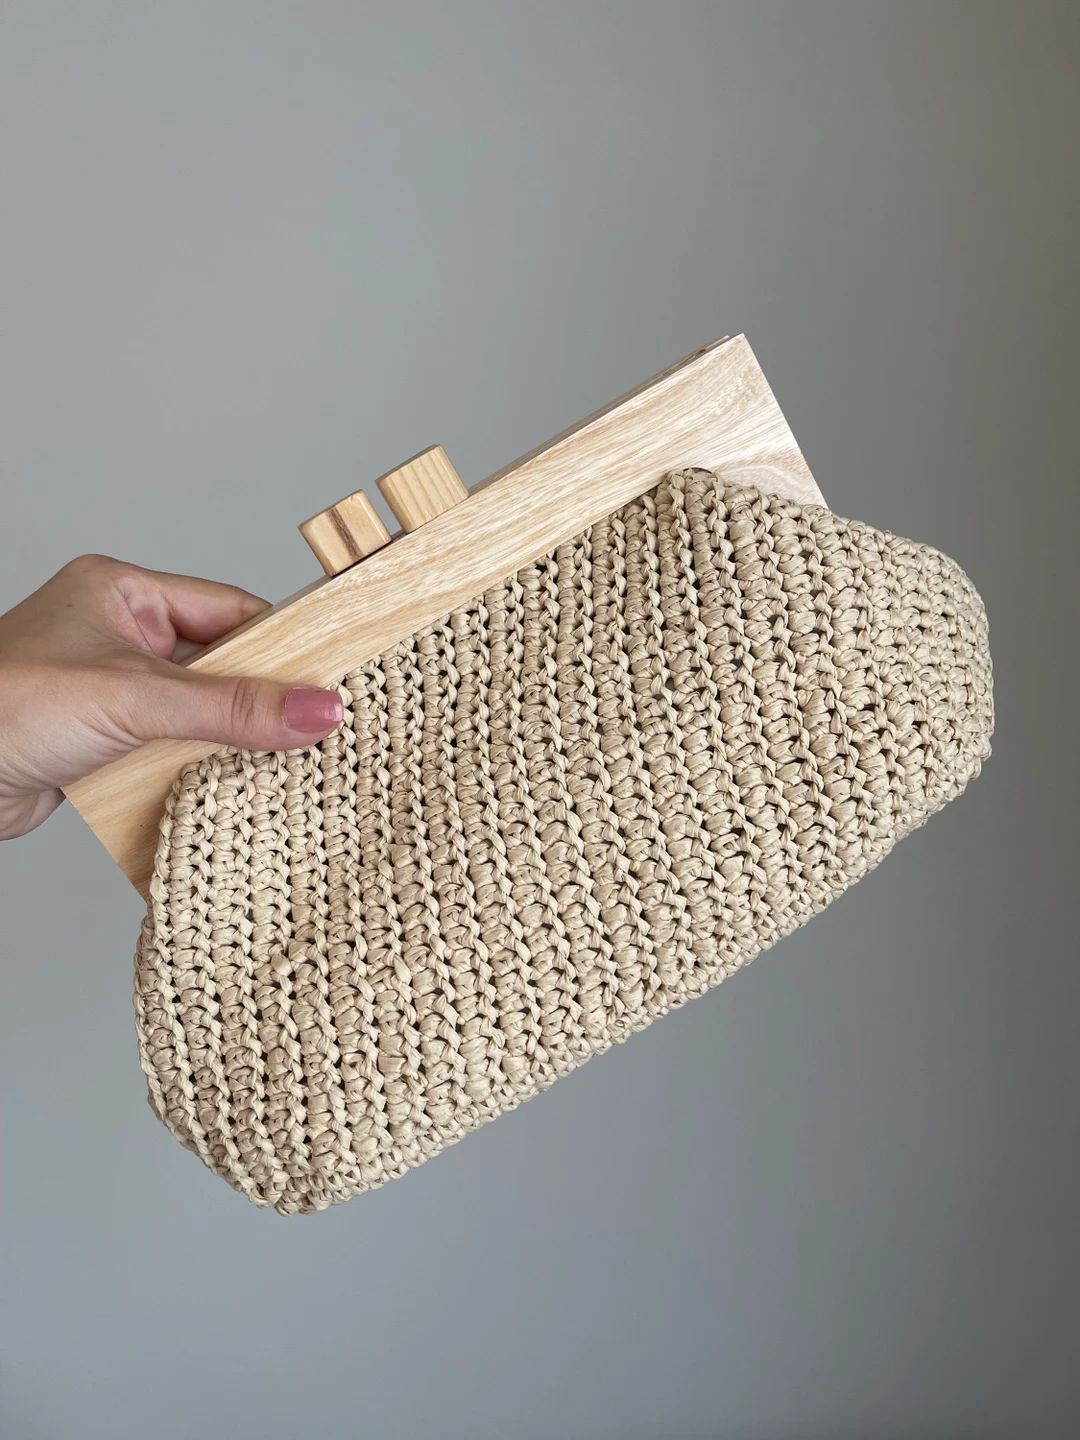 Crochet Bag,raffia Straw Clutch Purse ,straw Handbag,hand Woven Bag, Luxury Crochet Bag Handmade ... | Etsy (US)